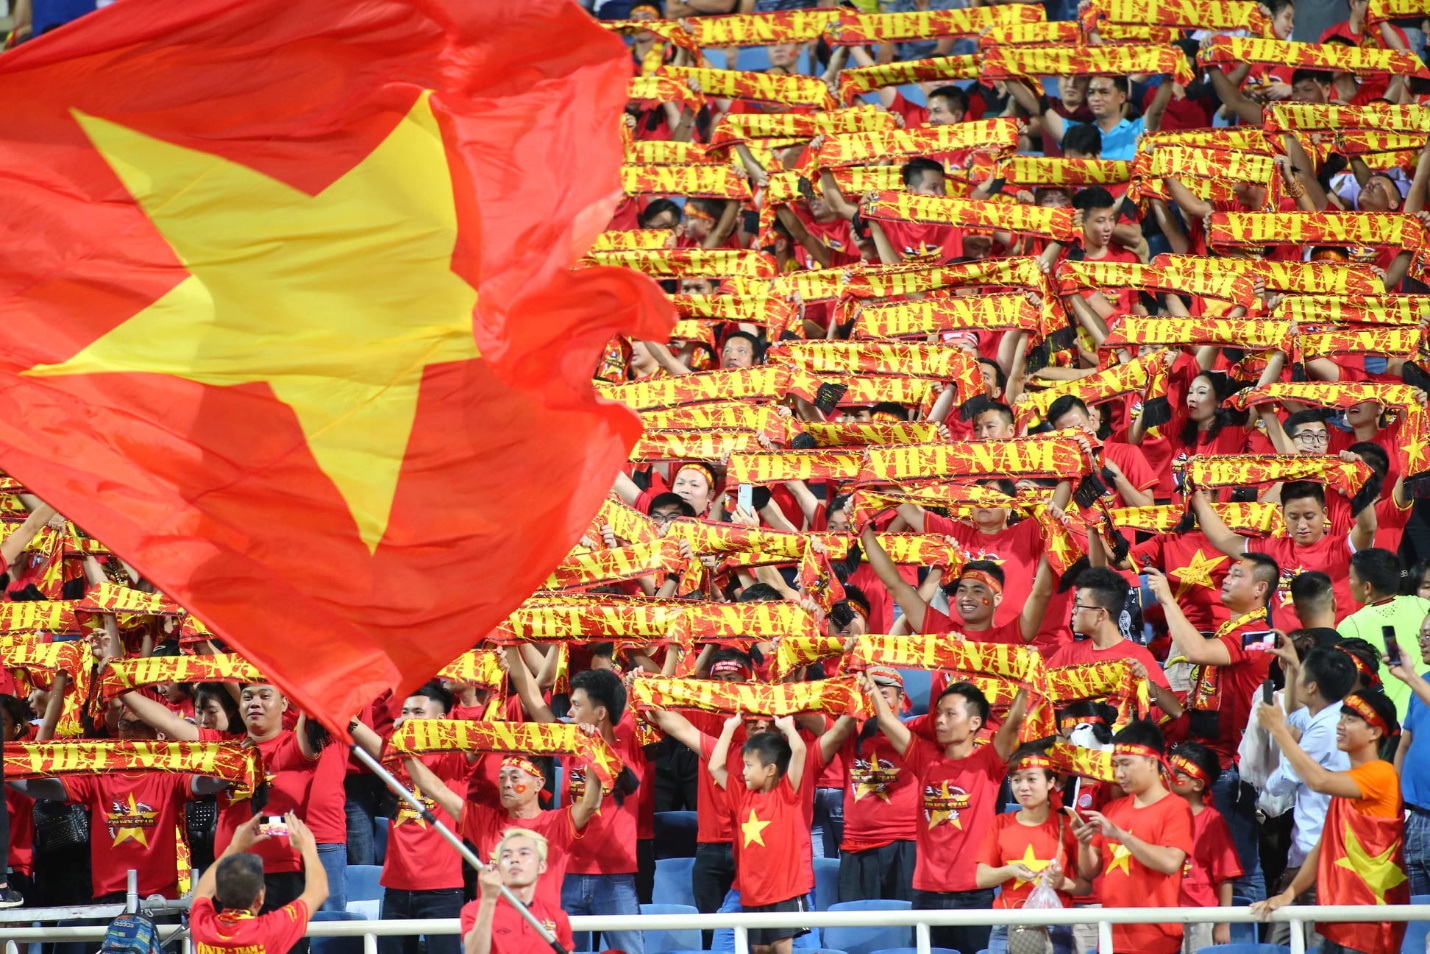 Vé trận đội tuyển Việt Nam - Nhật Bản giá cao nhất 1,2 triệu đồng - Ảnh 3.